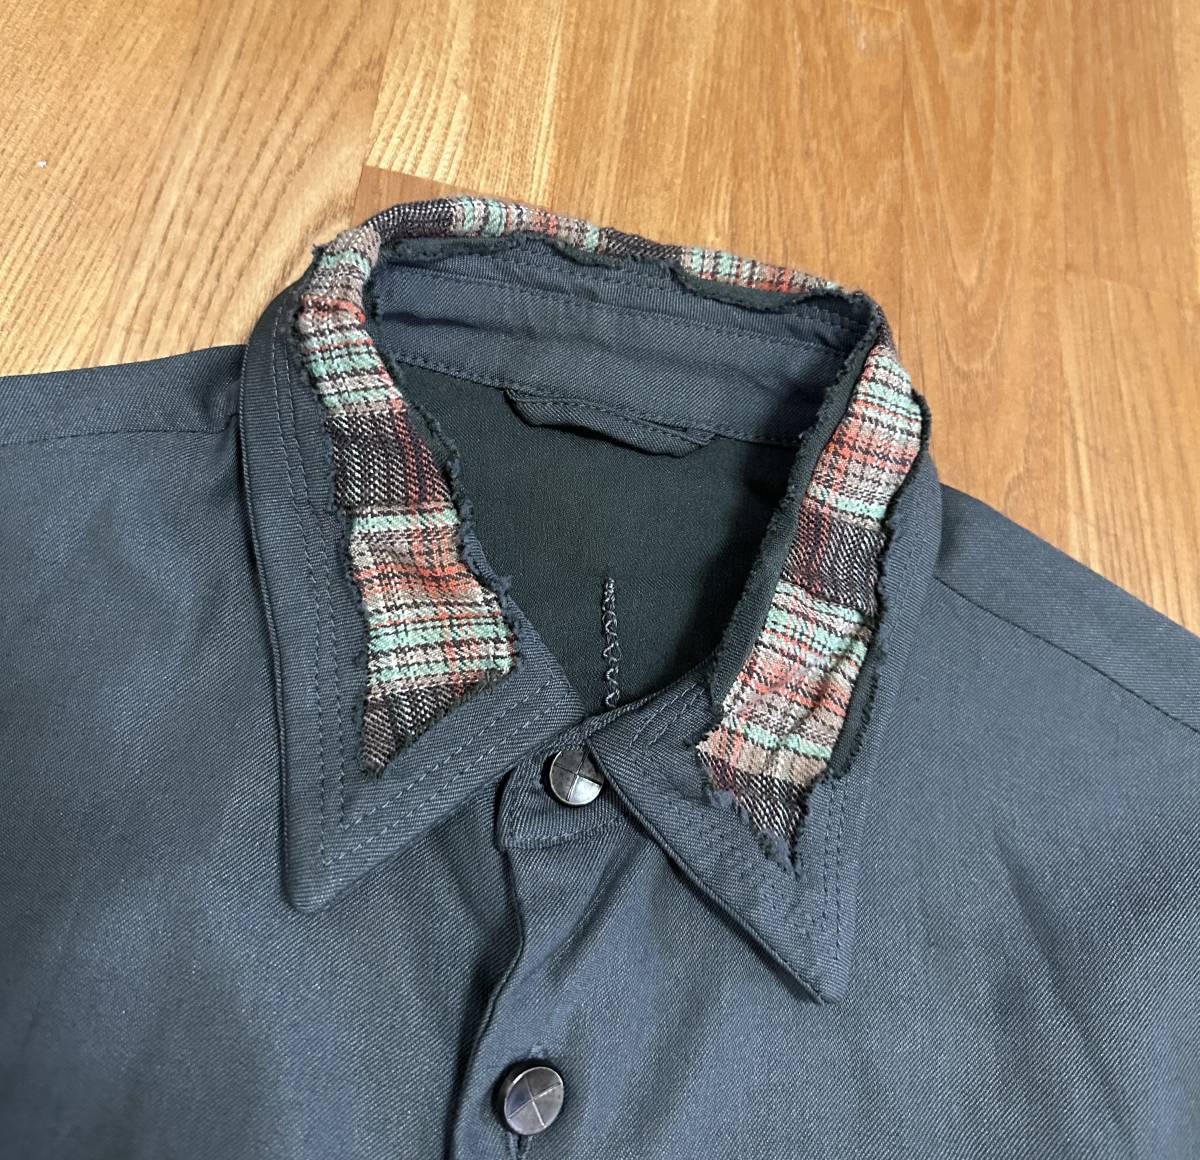 未使用品 19SS incarnation Olive × Plaid Crosscut Shirt Jacket / SIZE S (OLIVE/CHECK)_画像2